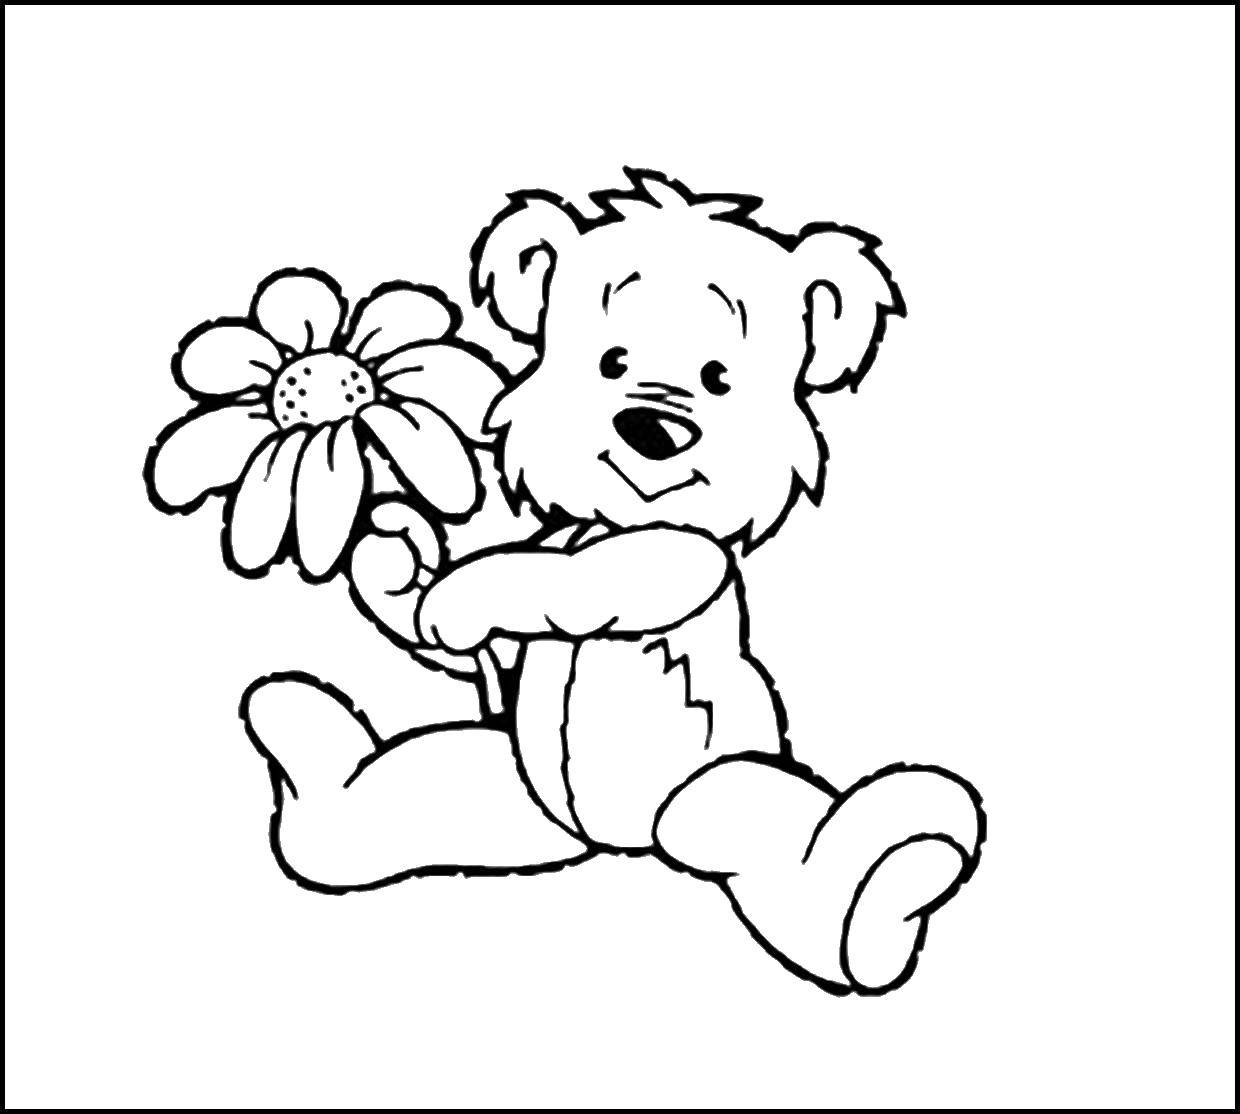 Опис: розмальовки  Мишко з квіточкою. Категорія: ведмедики з квітами. Теги:  Іграшка, ведмідь.